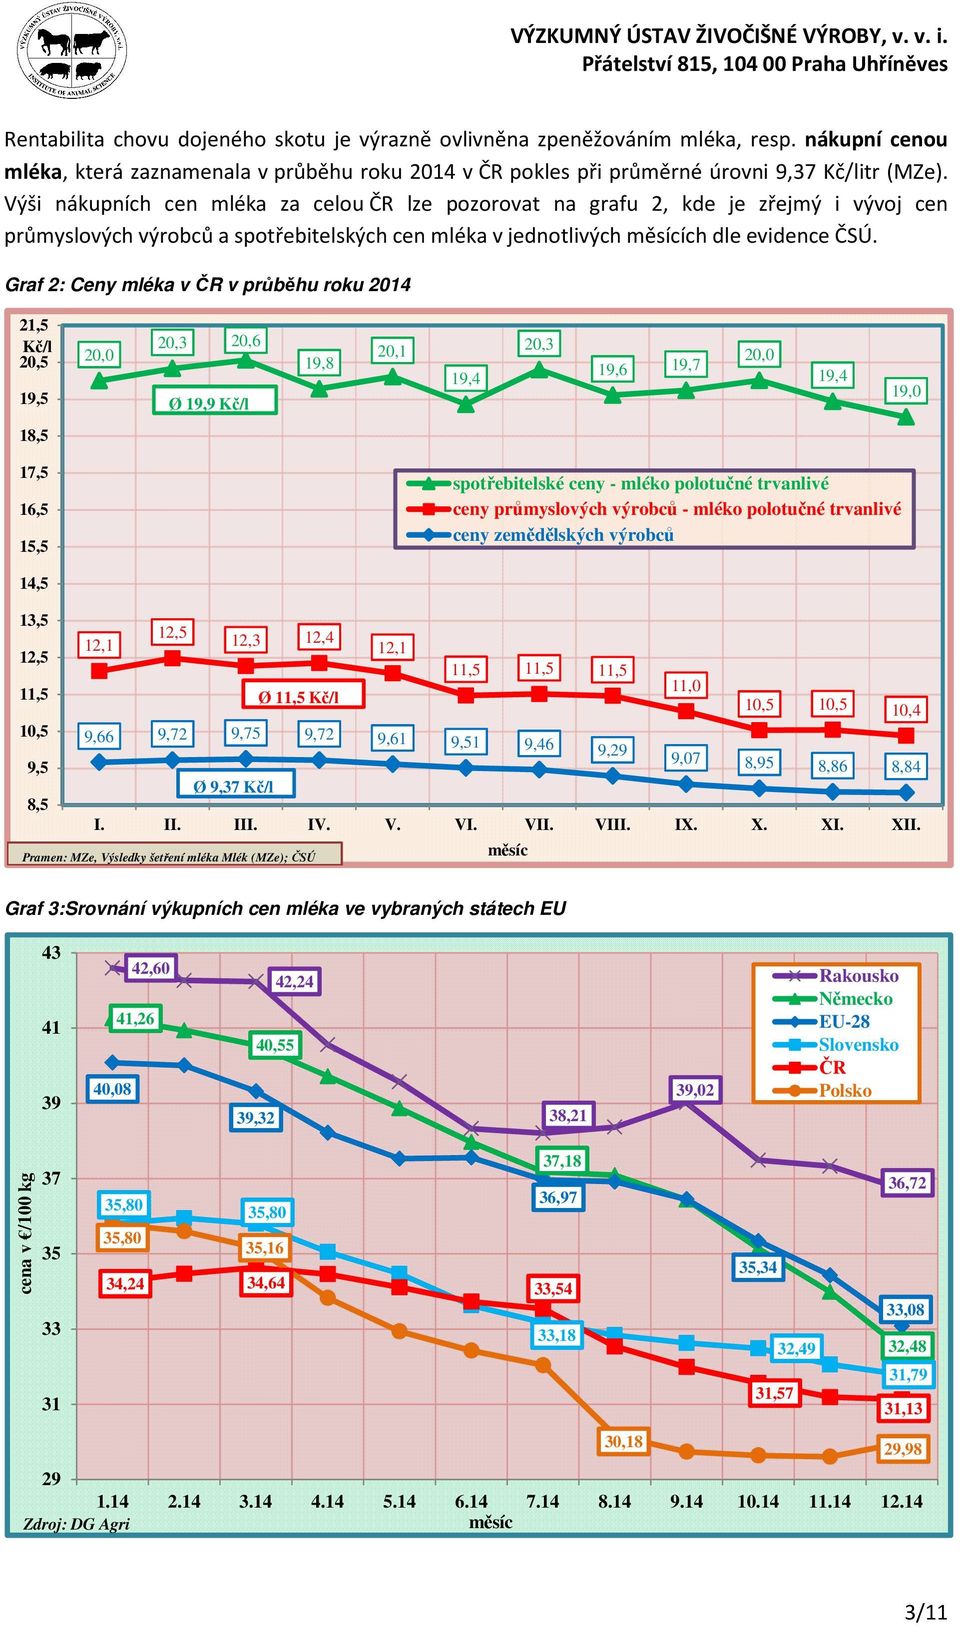 Graf 2: Ceny mléka v ČR v průběhu roku 2014 21,5 Kč/l 20,5 19,5 20,0 20,3 20,6 Ø 19,9 Kč/l 19,8 20,1 19,4 20,3 19,6 19,7 20,0 19,4 19,0 18,5 17,5 16,5 15,5 spotřebitelské ceny - mléko polotučné